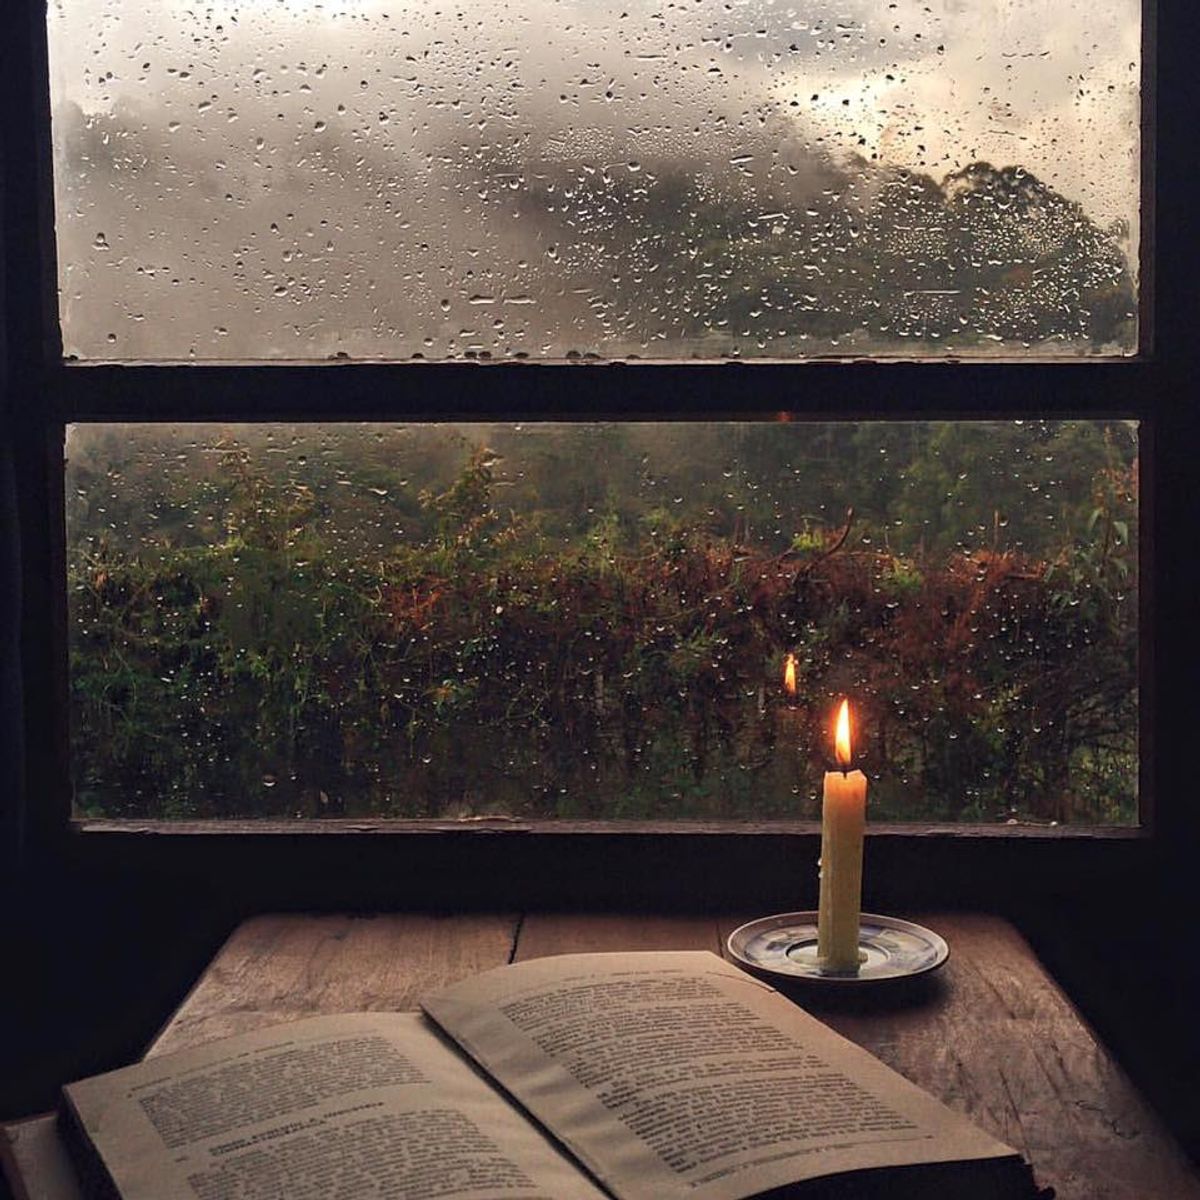 A Study In Rainy Days